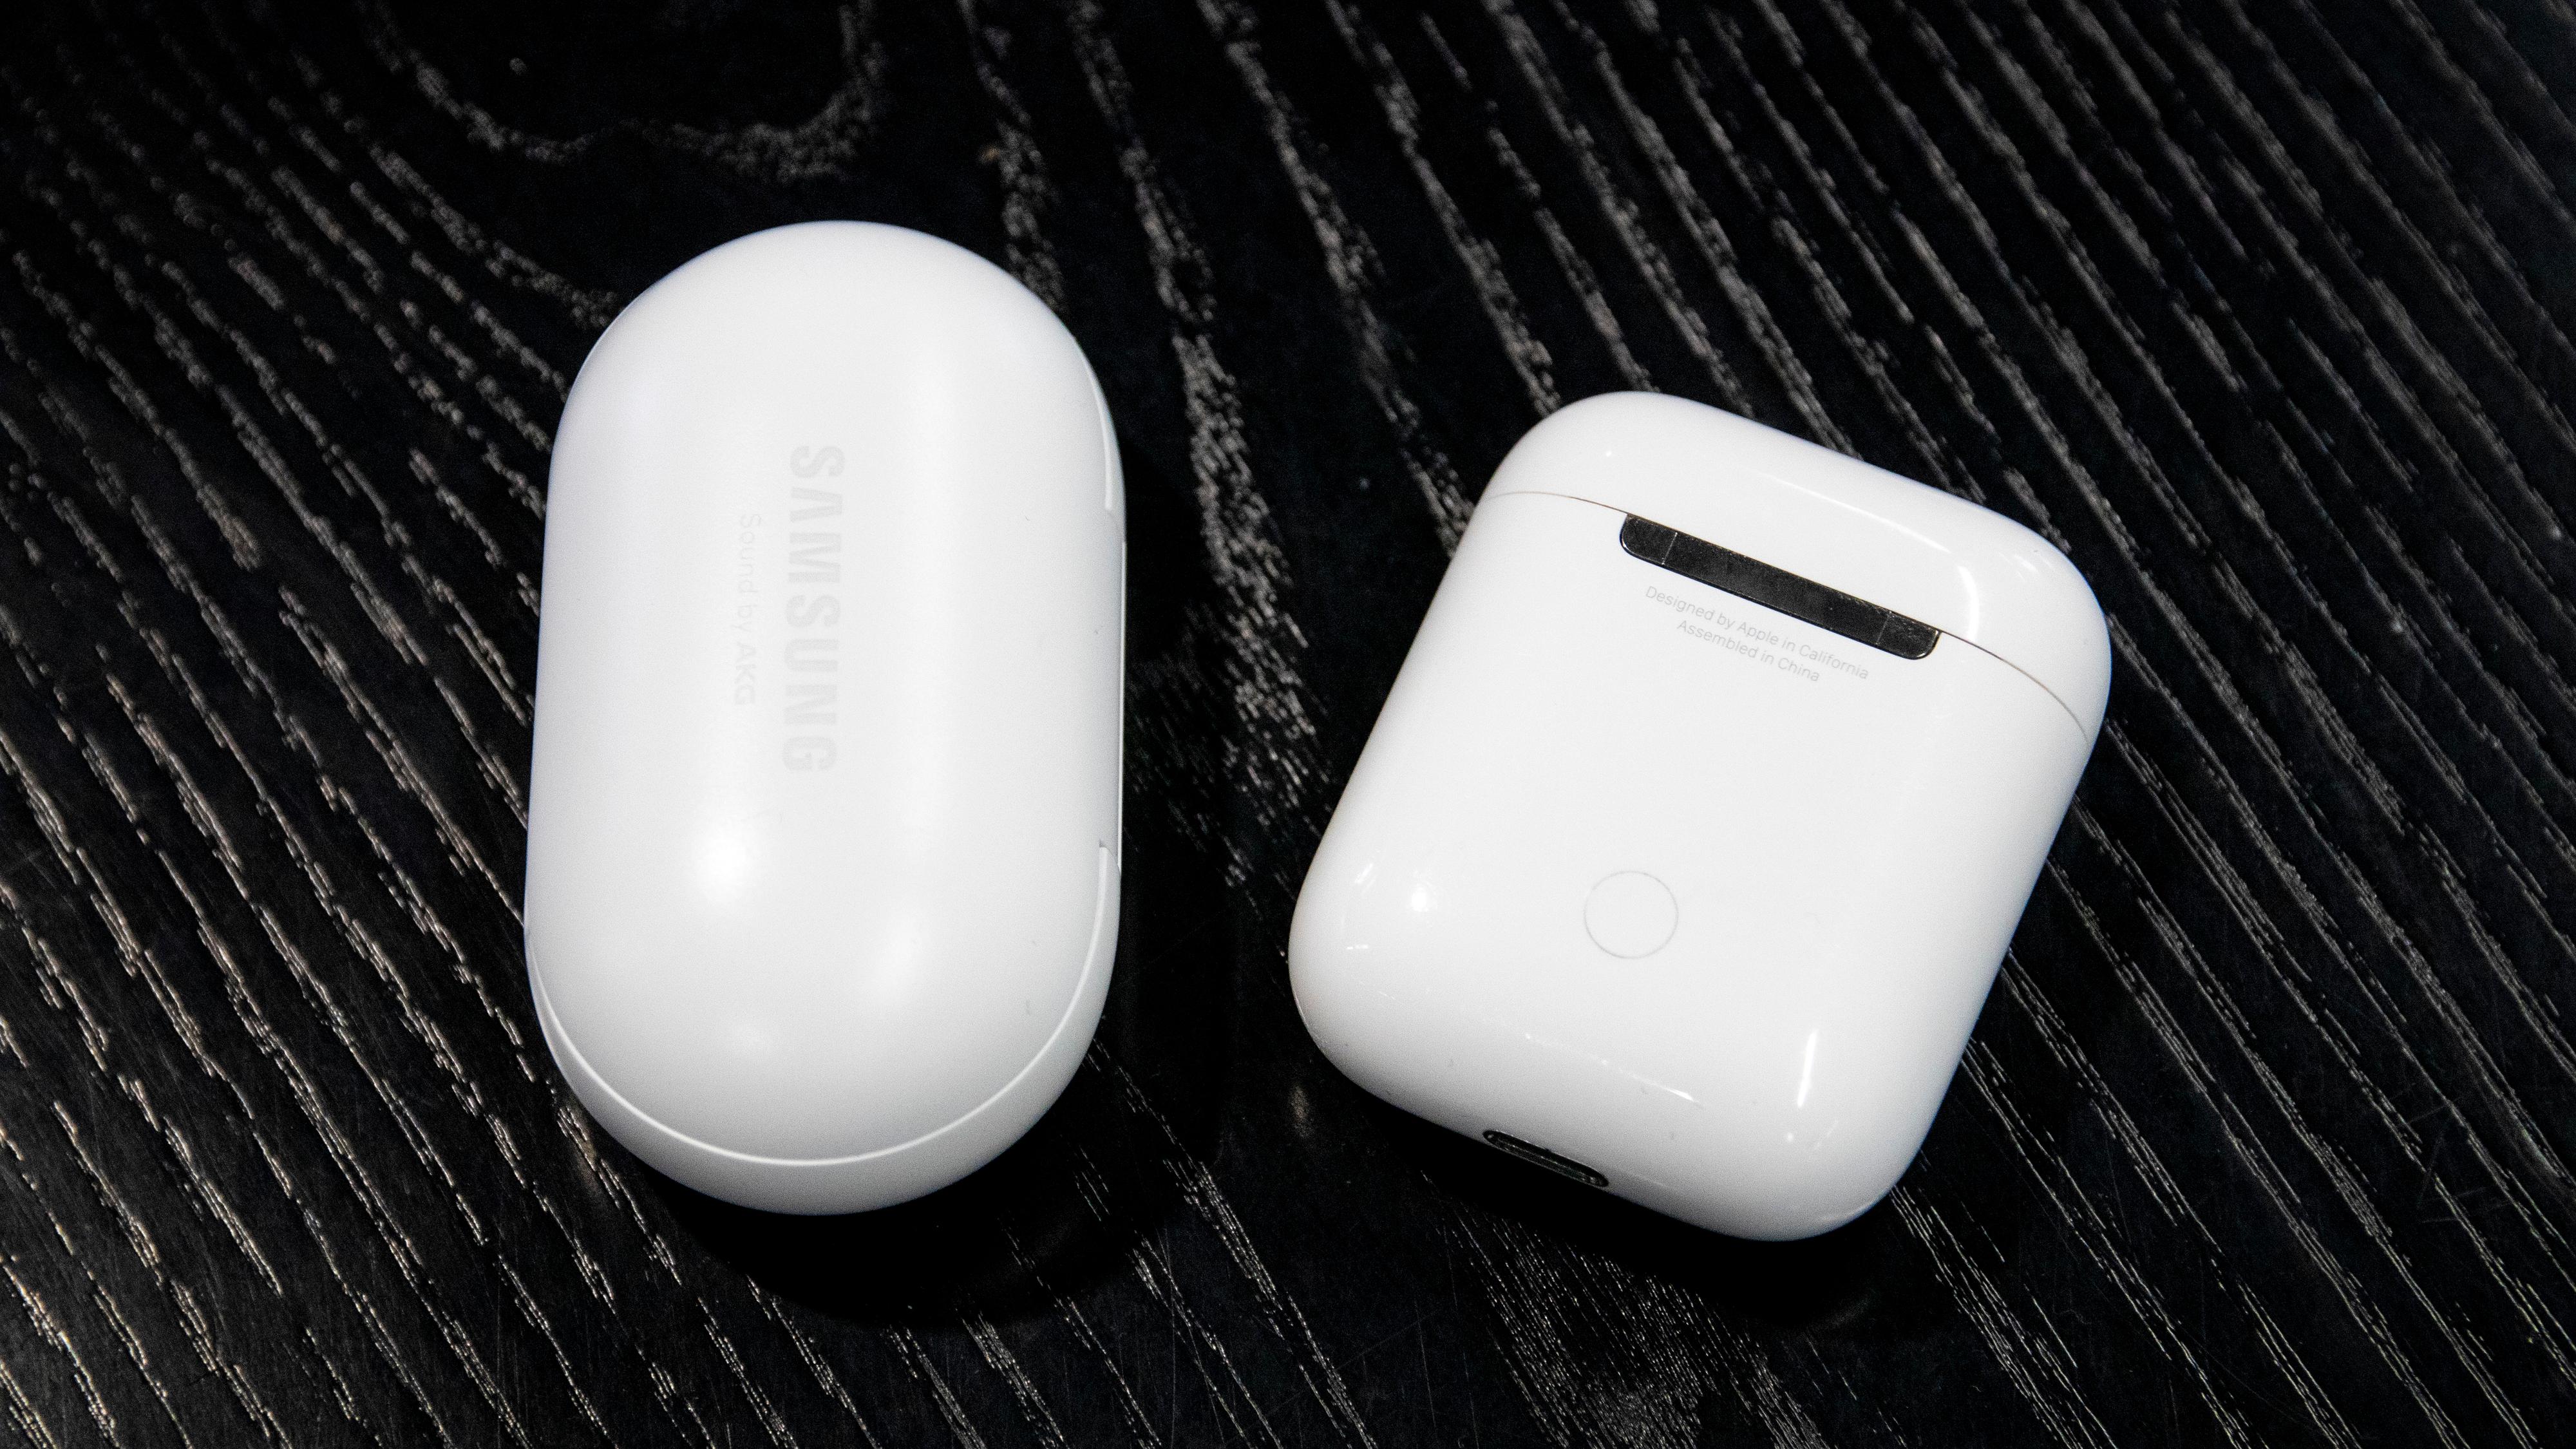 Airpods-etuiet sammen med Samsung Galaxy Buds. Begge er små, men Apples etui har en litt mer praktisk form.